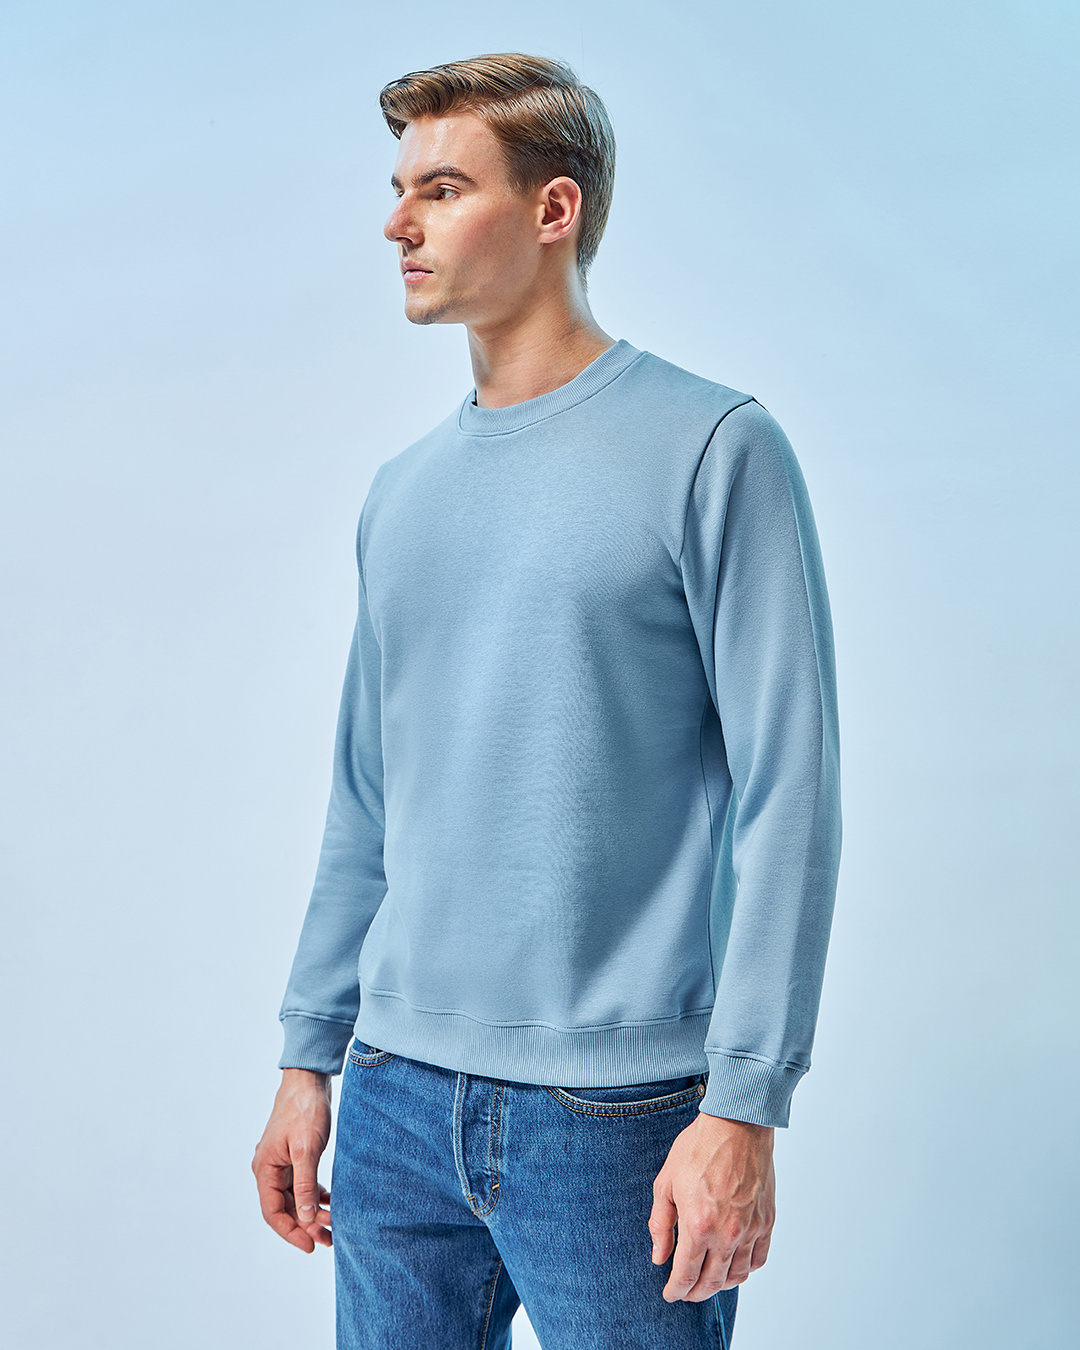 Buy Men's Blue Sweatshirt Online at Bewakoof